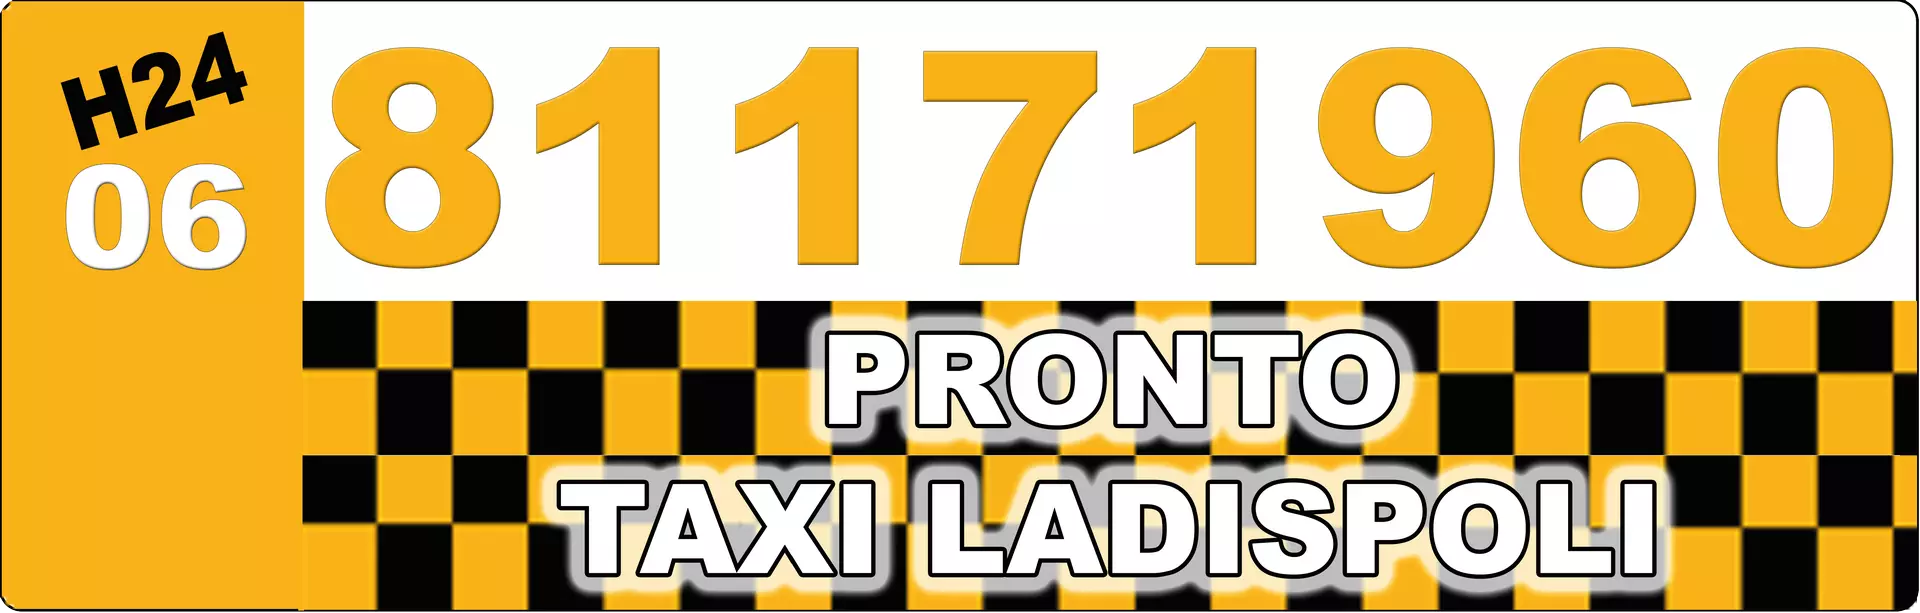 Pronto Taxi Ladispolilo storico marchio registrato